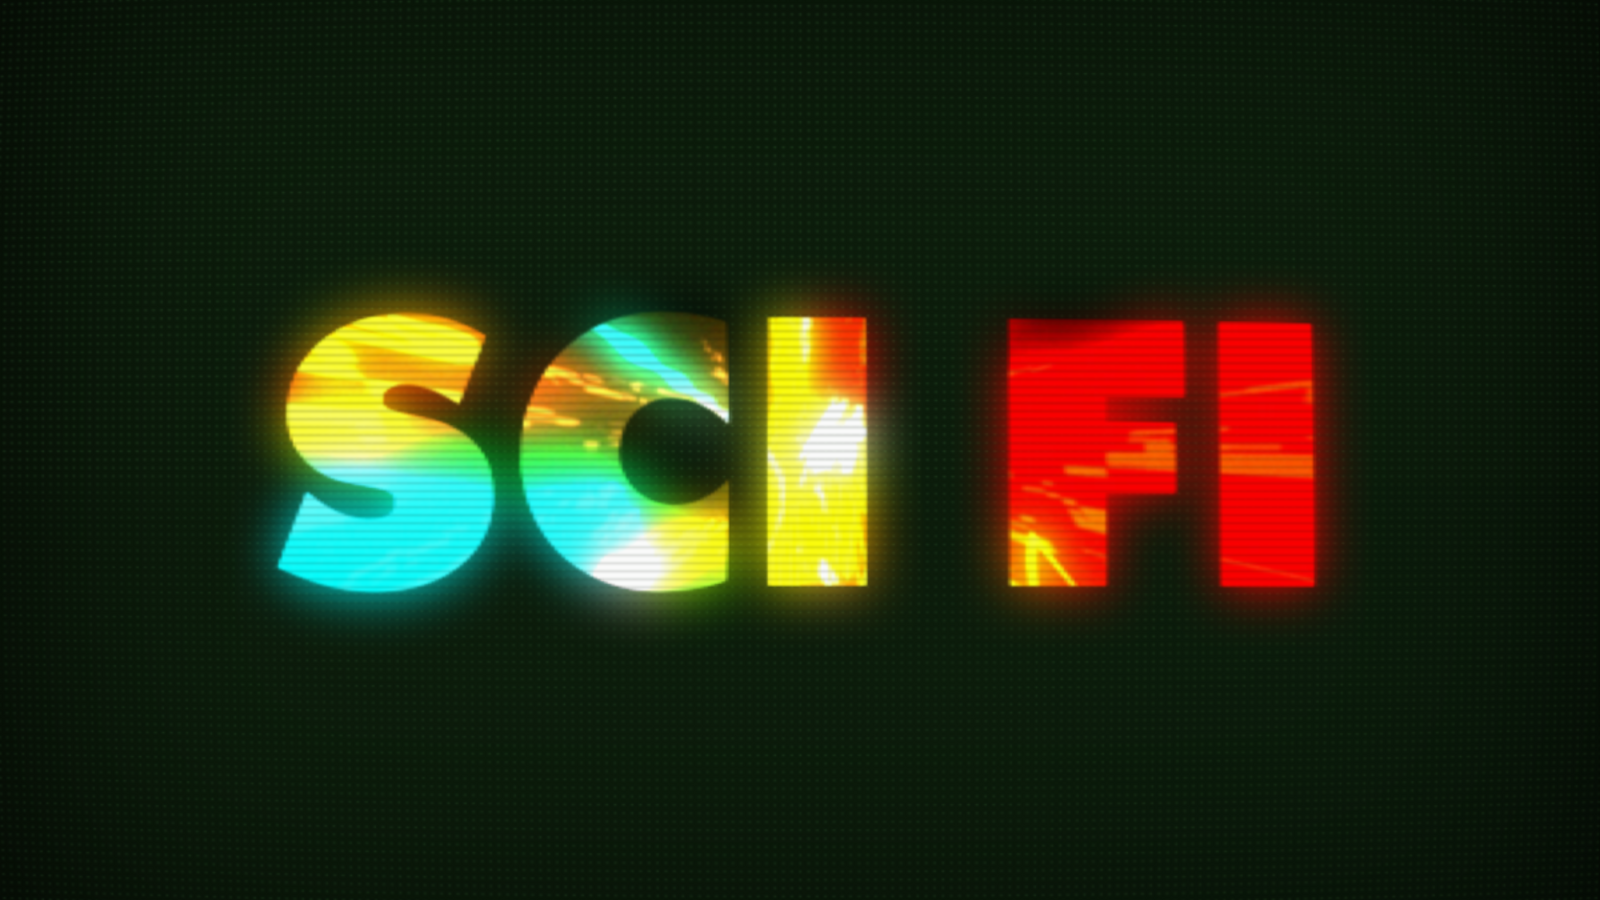 A retro-futuristic graphic reads: SCI FI